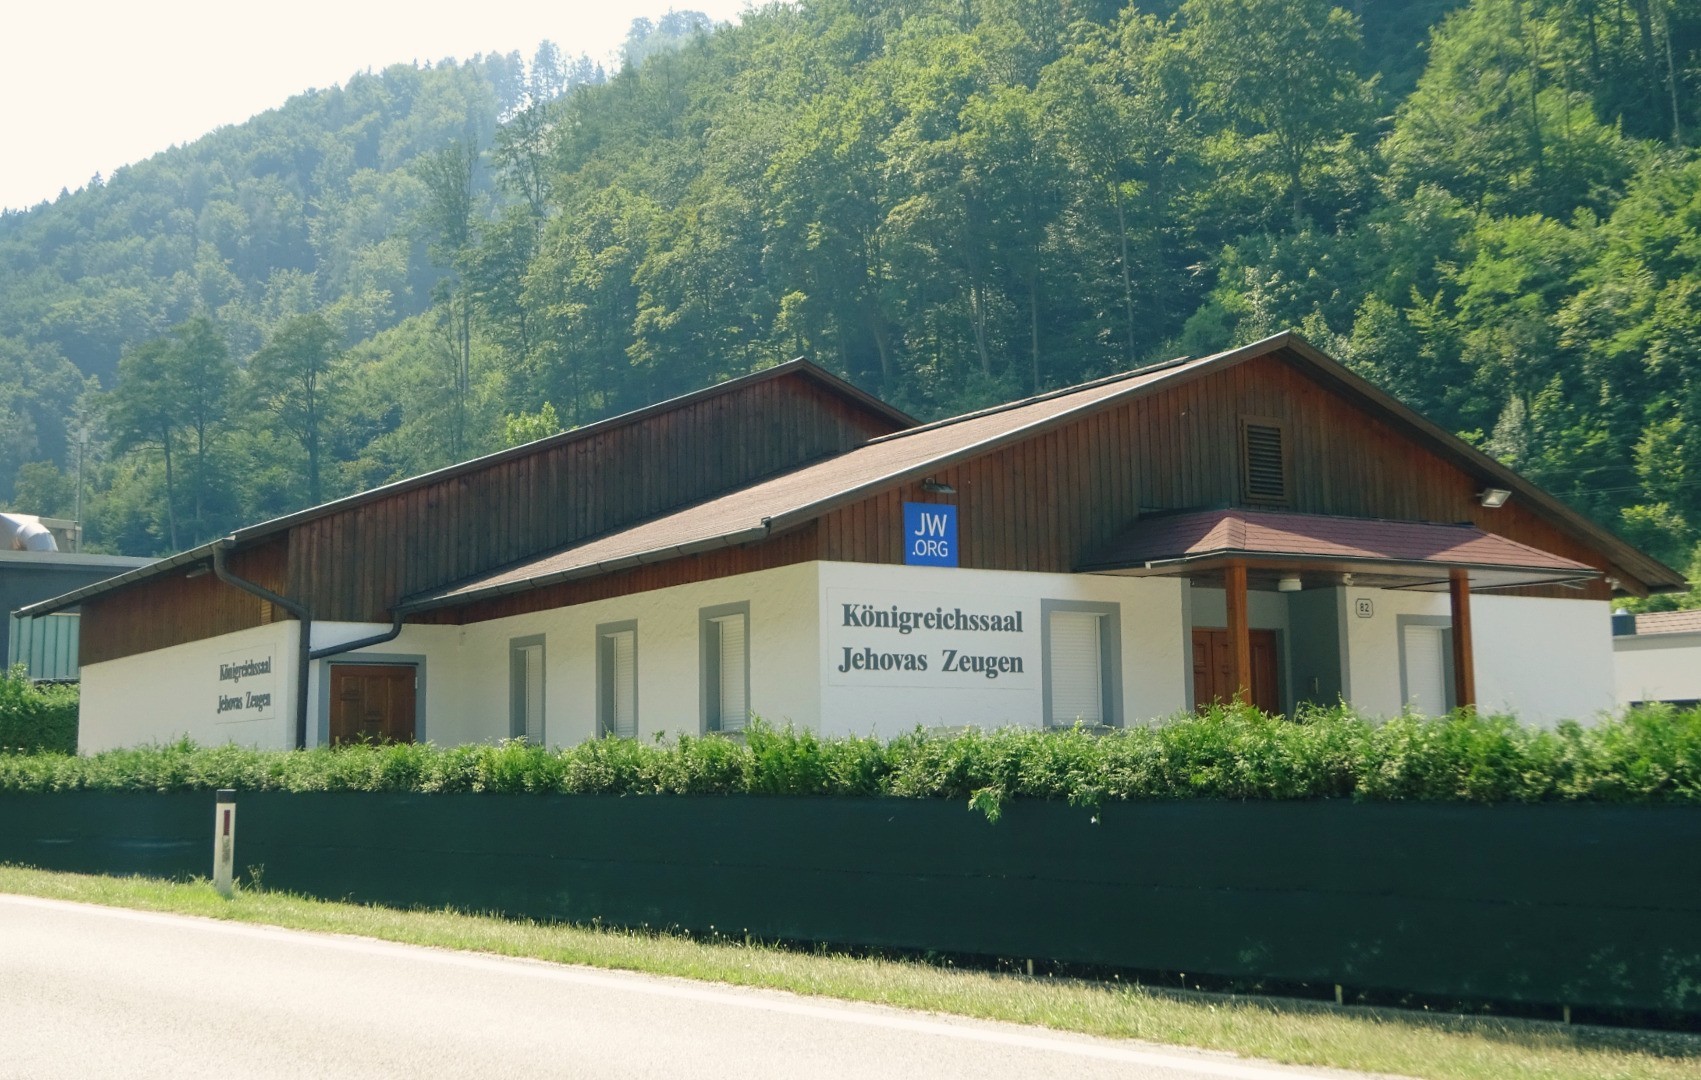 Königreichssaal Jehovas Zeugen Waidhofen Y.jpg